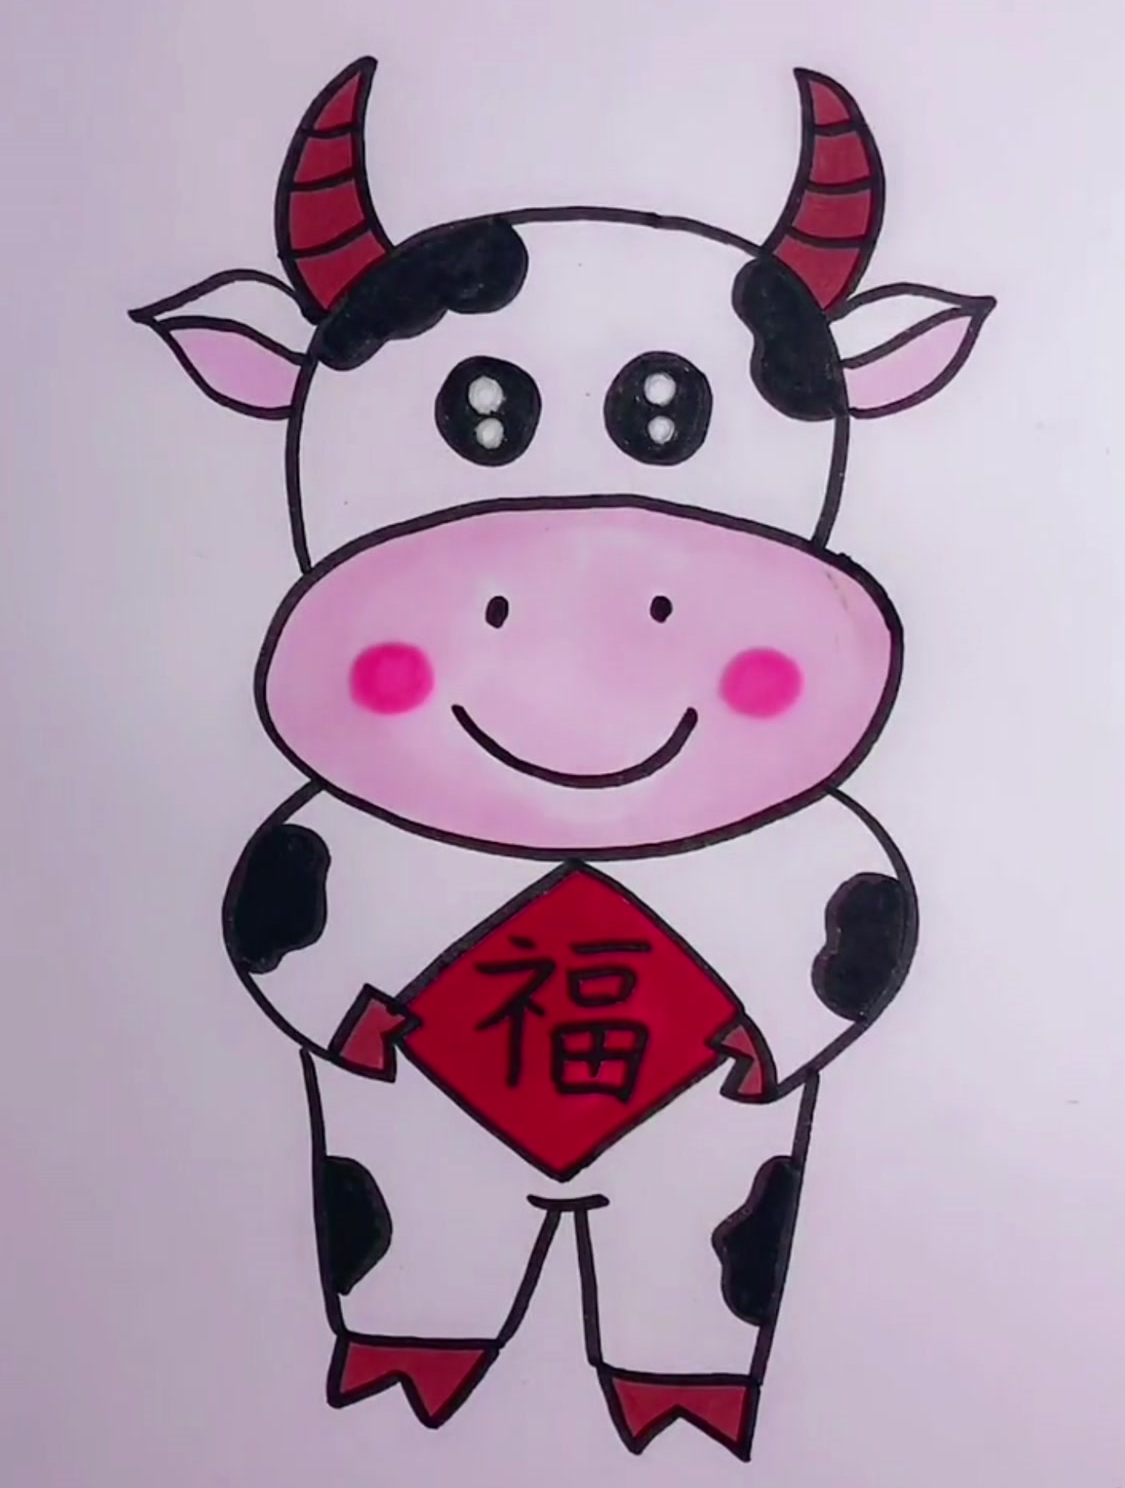 小奶牛简笔画,简单又可爱,一起试试吧!